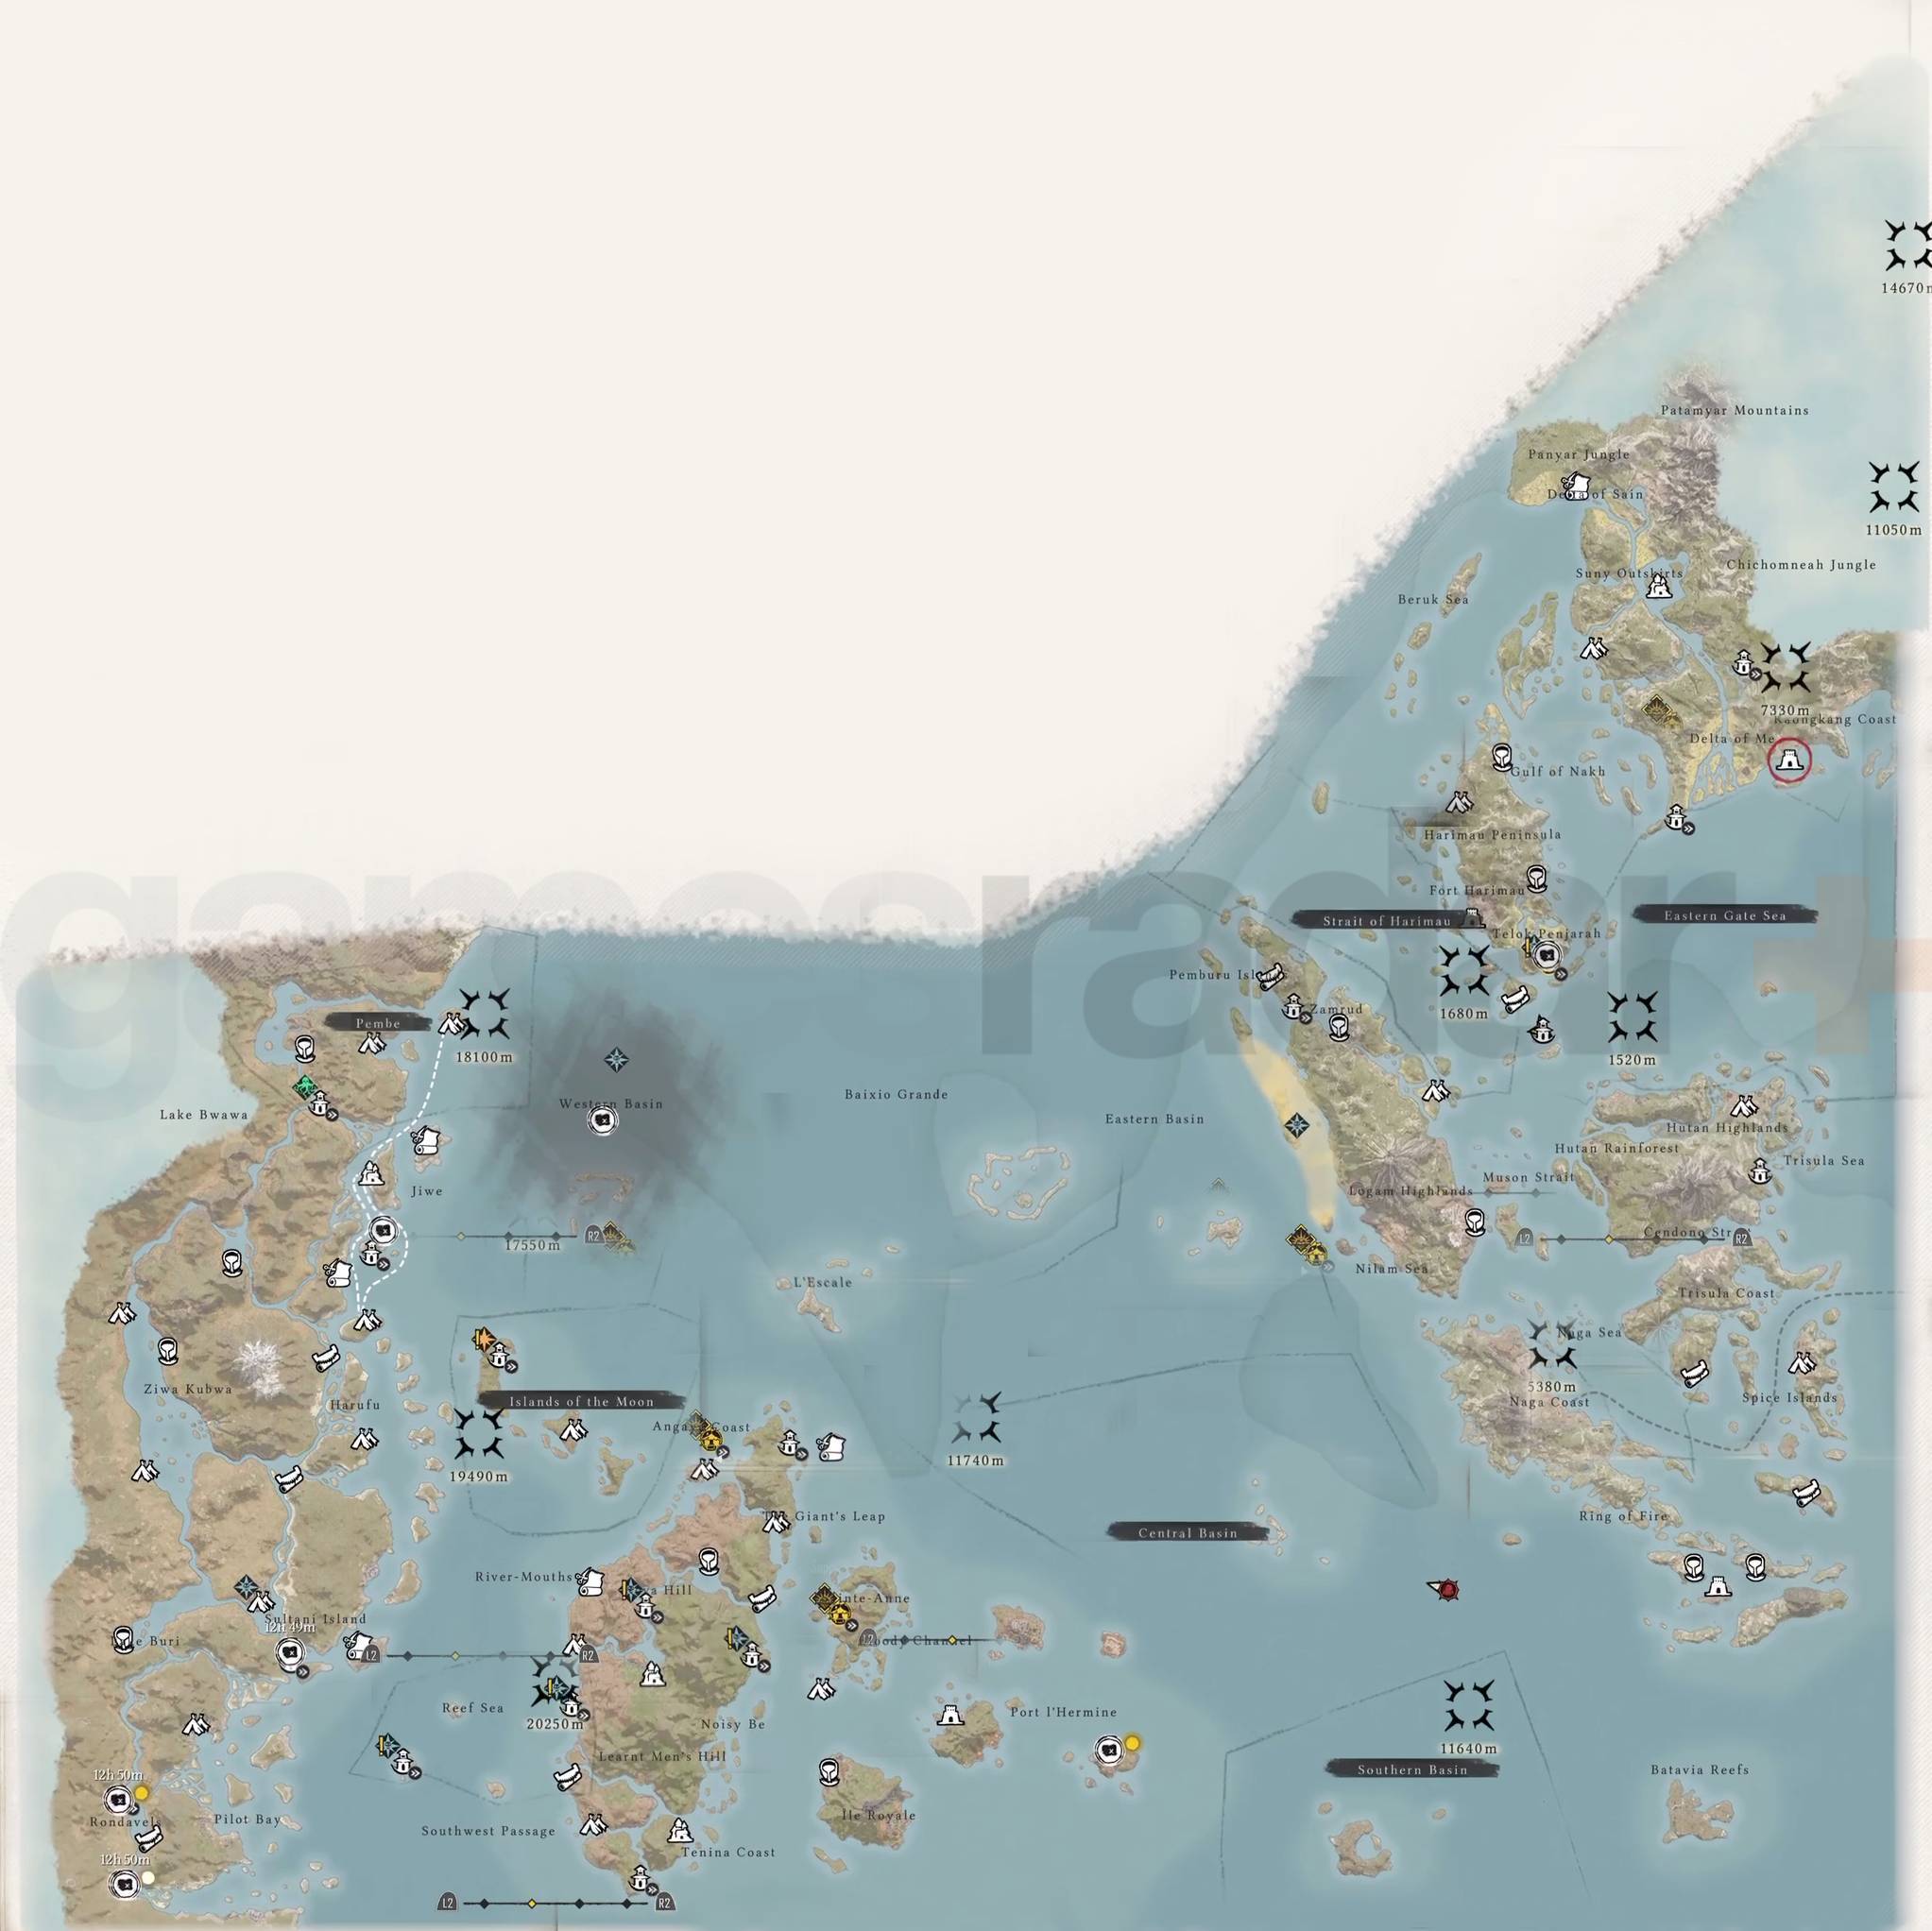 Mapa completo de Skull and Bones en el juego